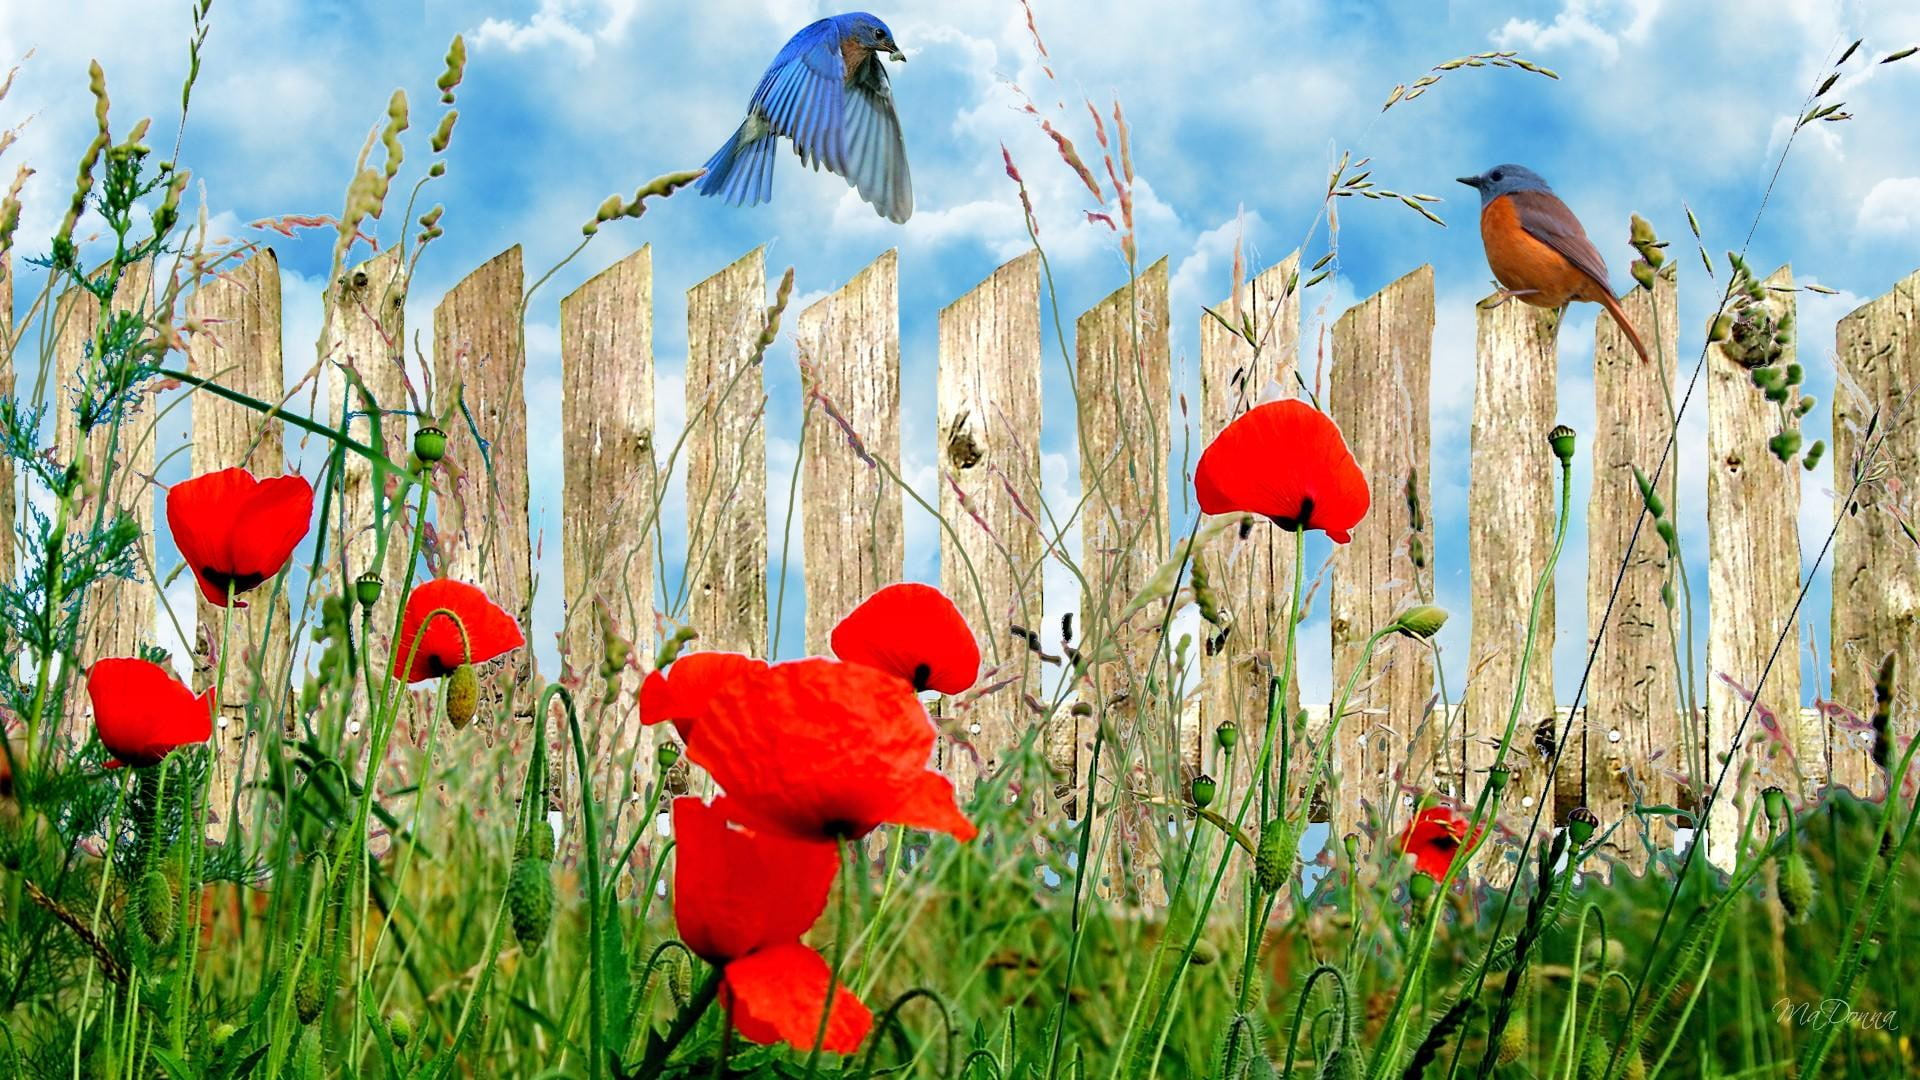 Wall O Poppies, firefox persona, grass, wild flowers, birds, field